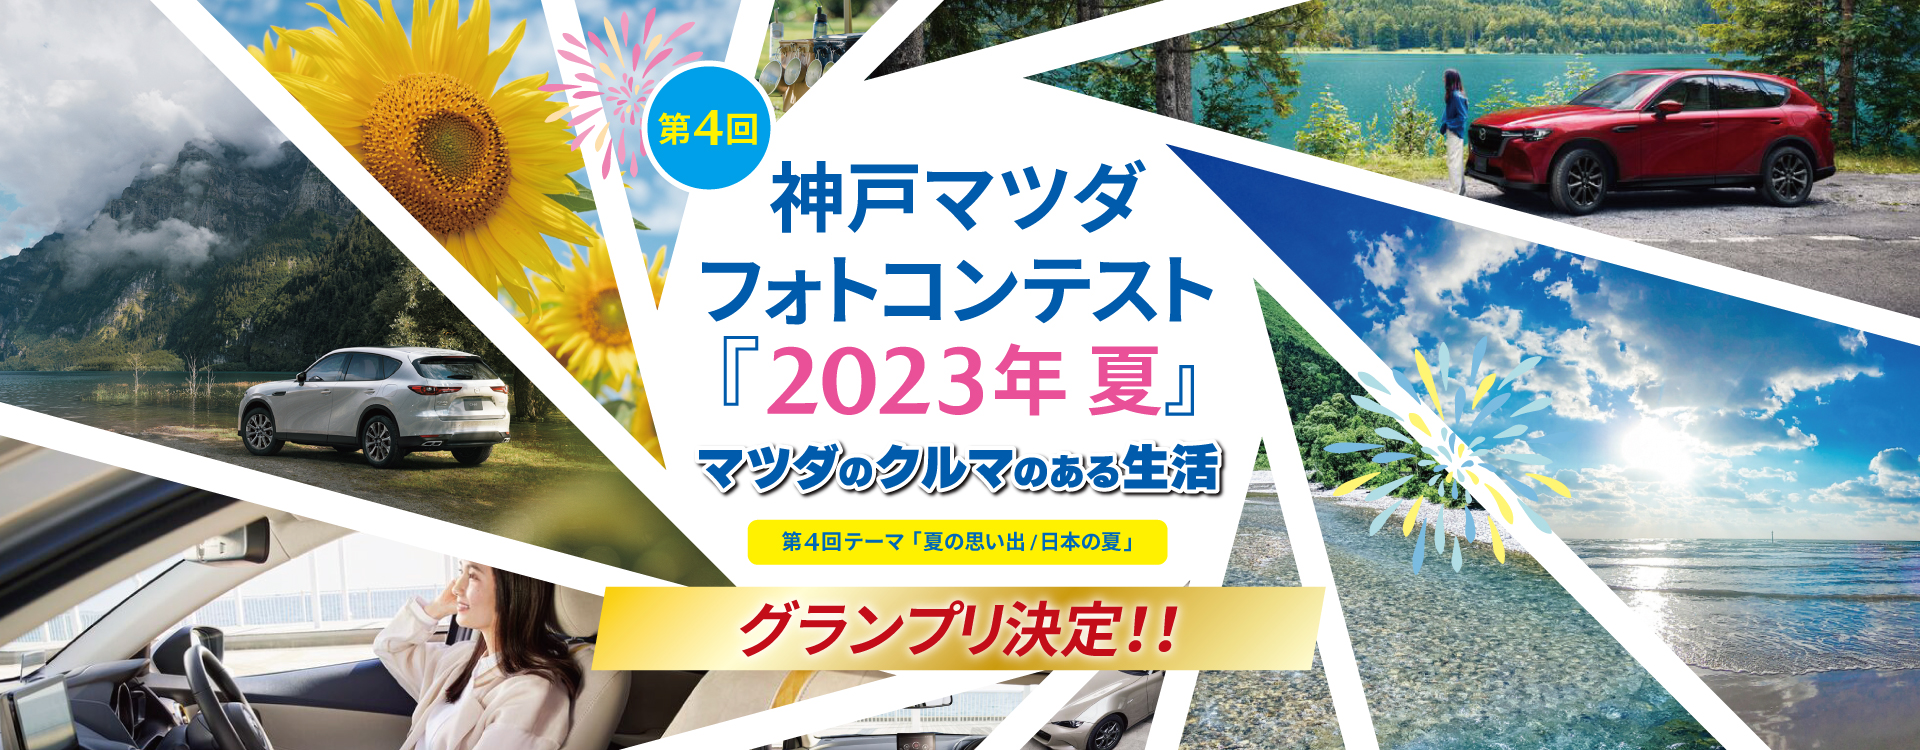 第4回神戸マツダフォトコンテスト「2023夏 マツダのクルマのある生活」